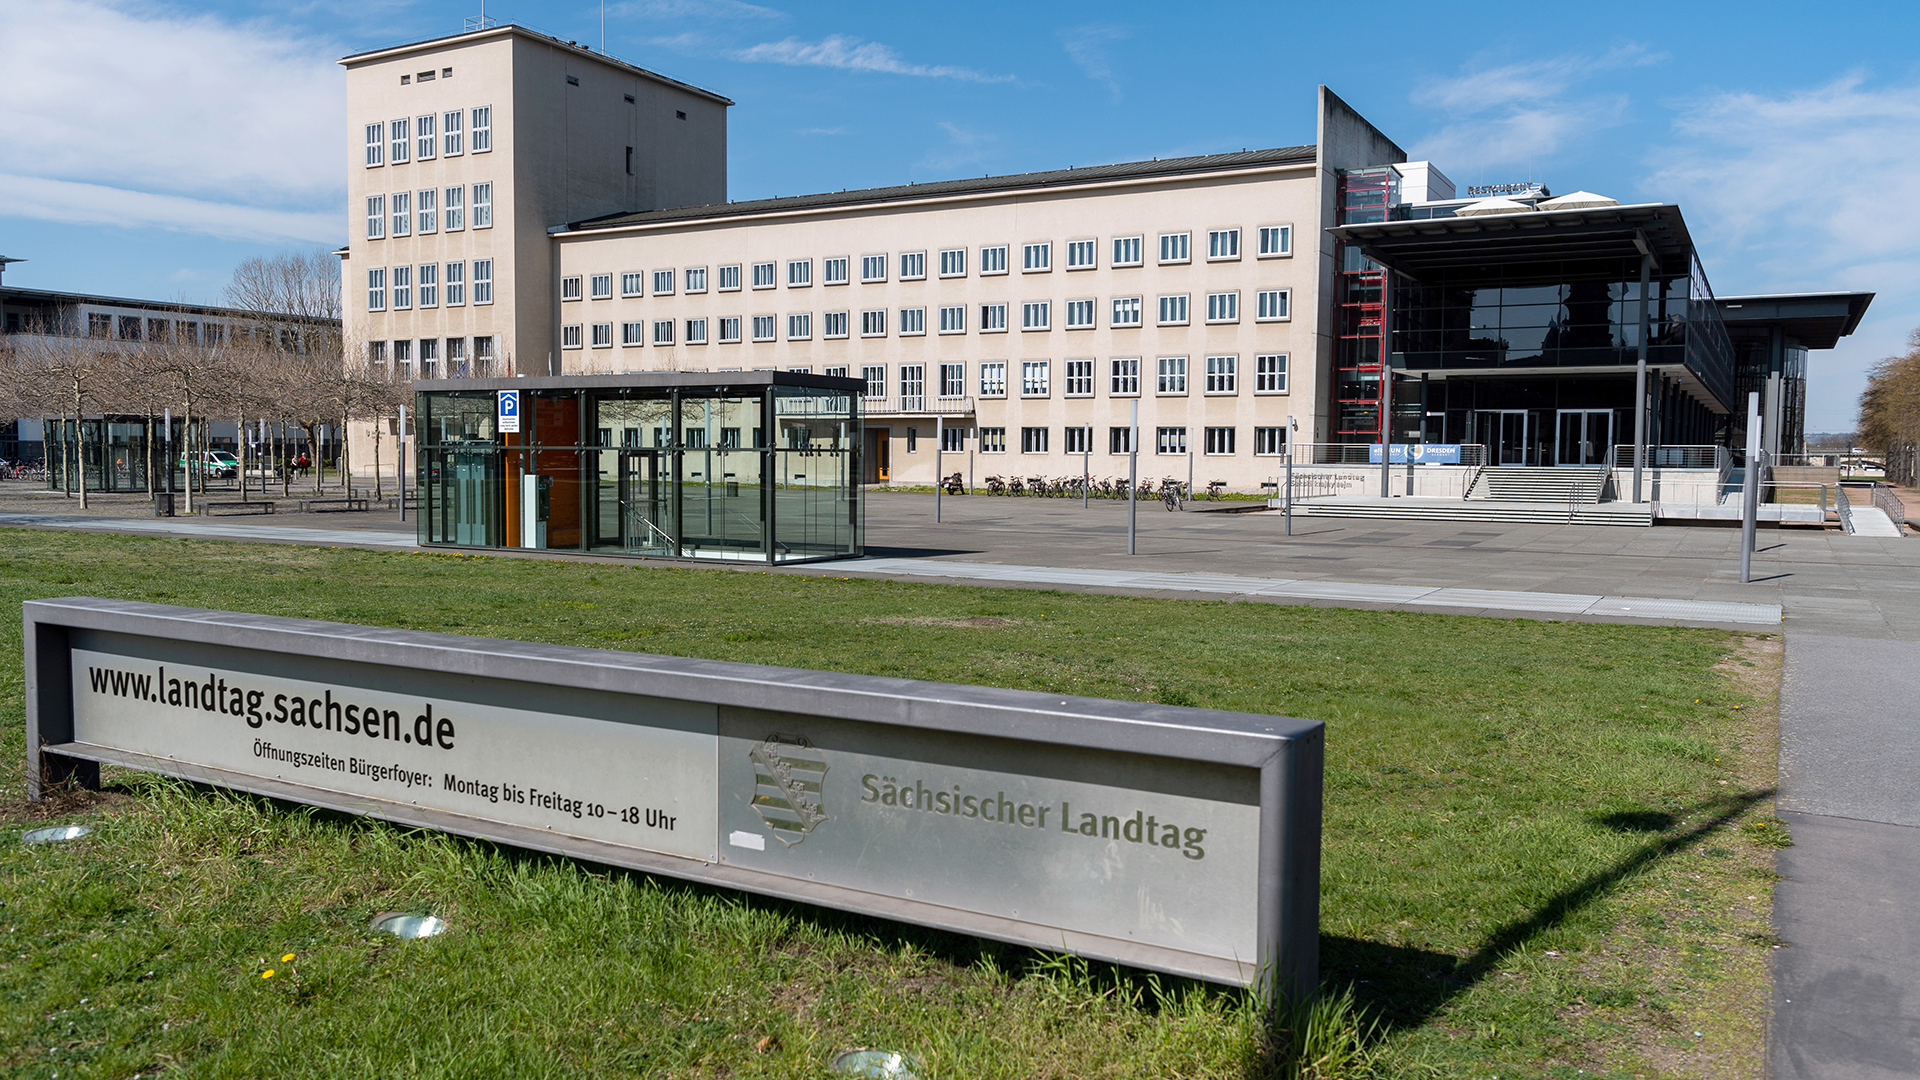 Sächsischer Landtag in Dresden | picture alliance/dpa